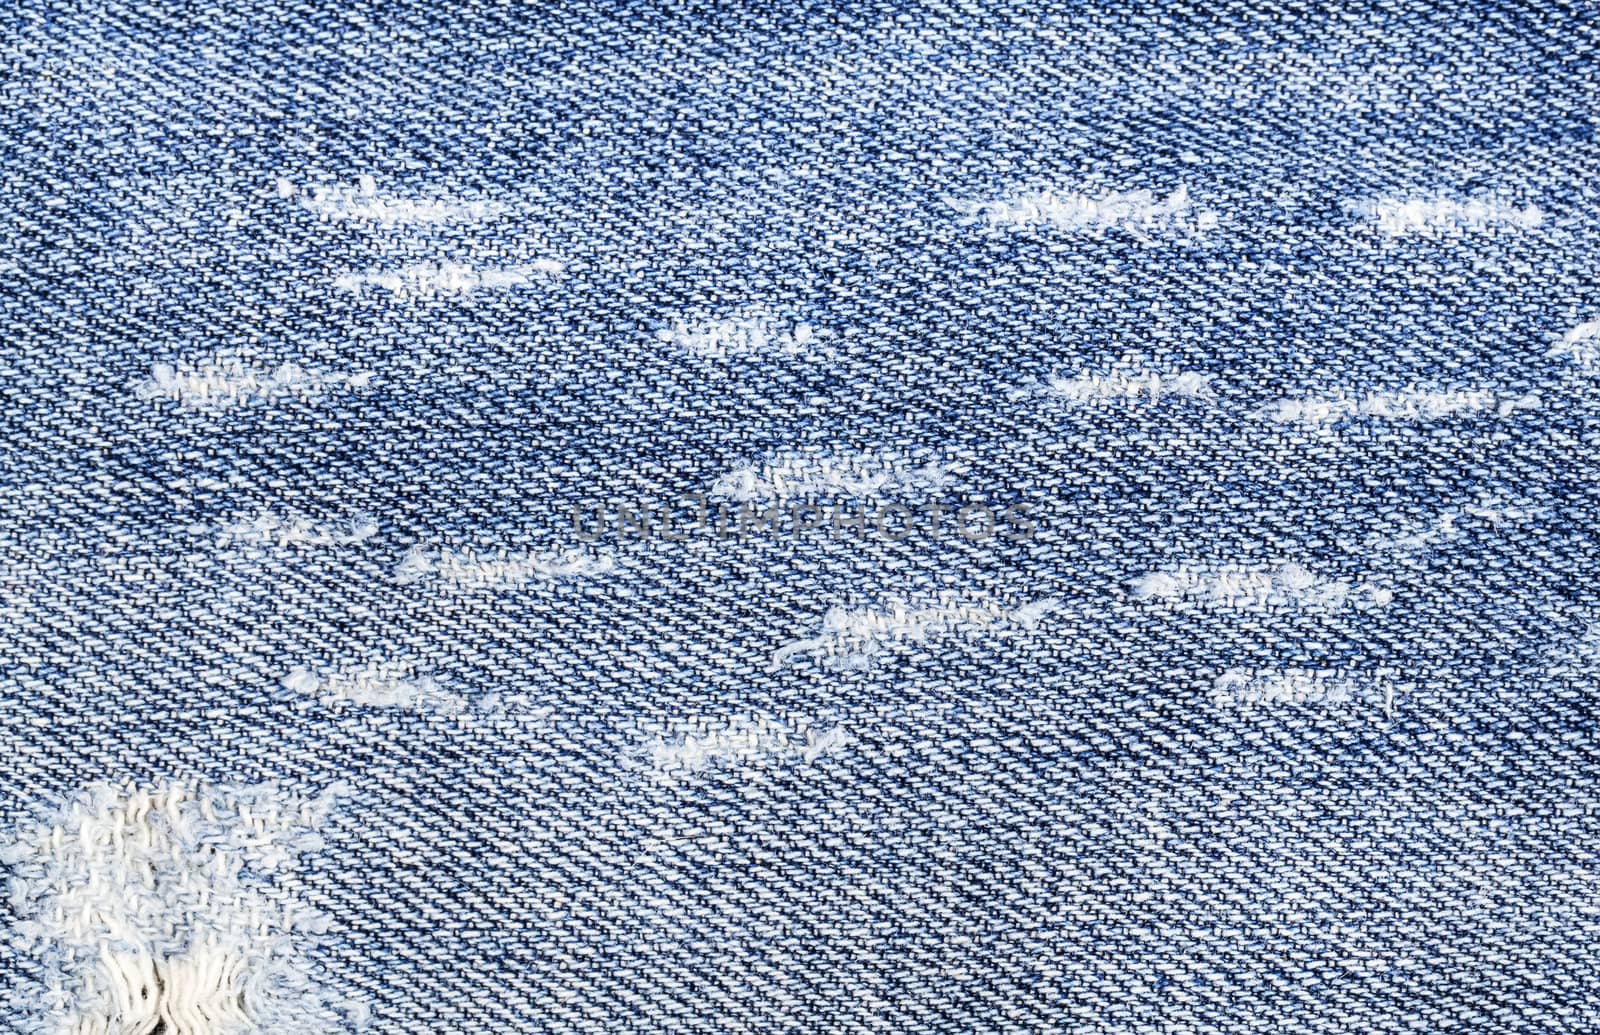 Jeans textile texture close view